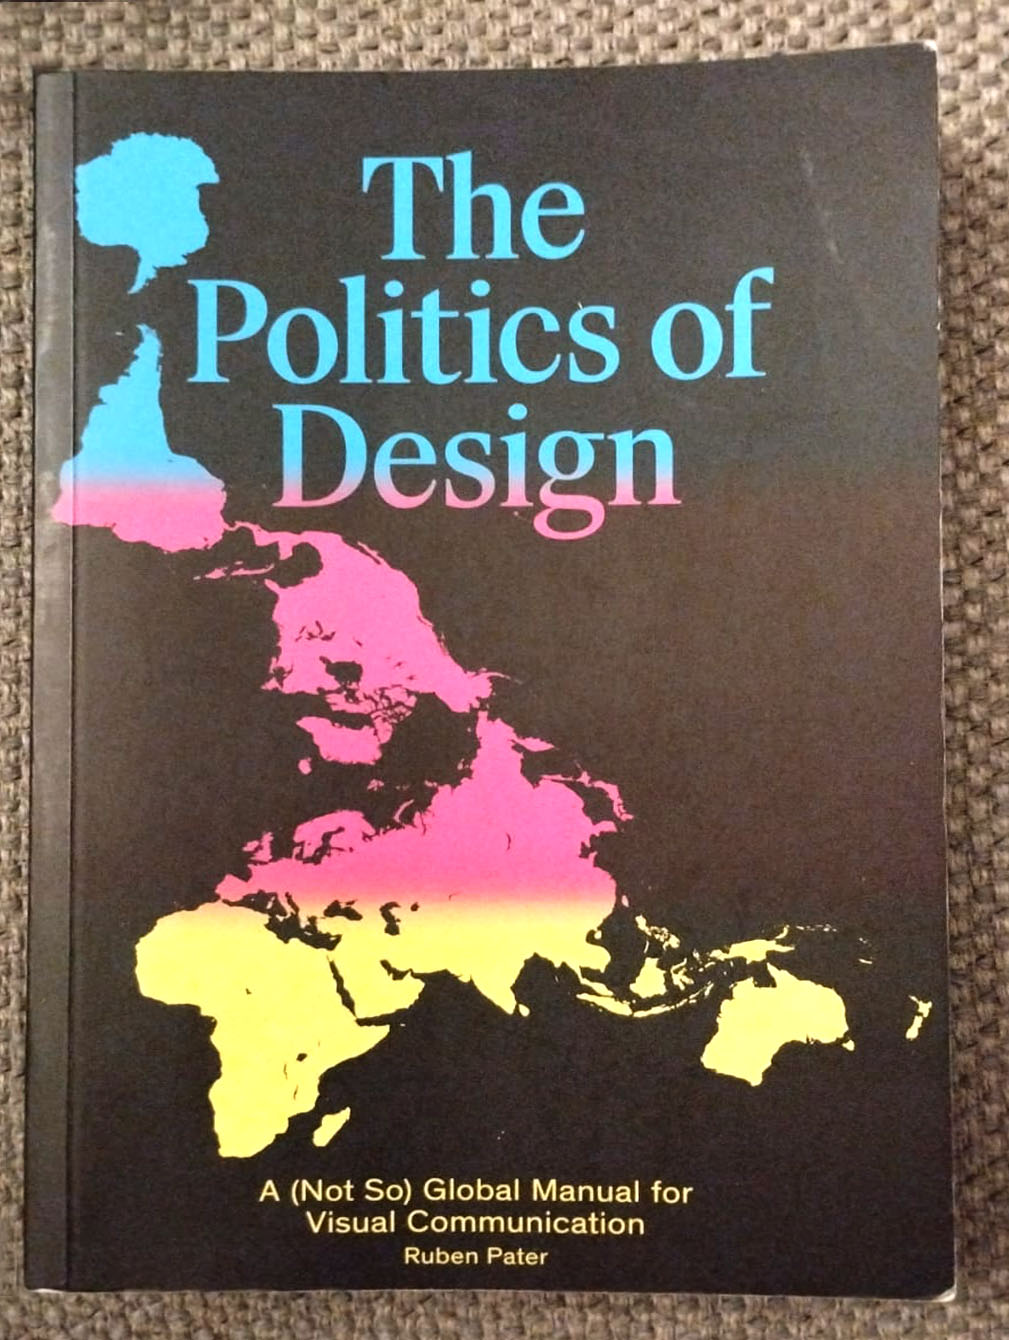 The Politics of Design